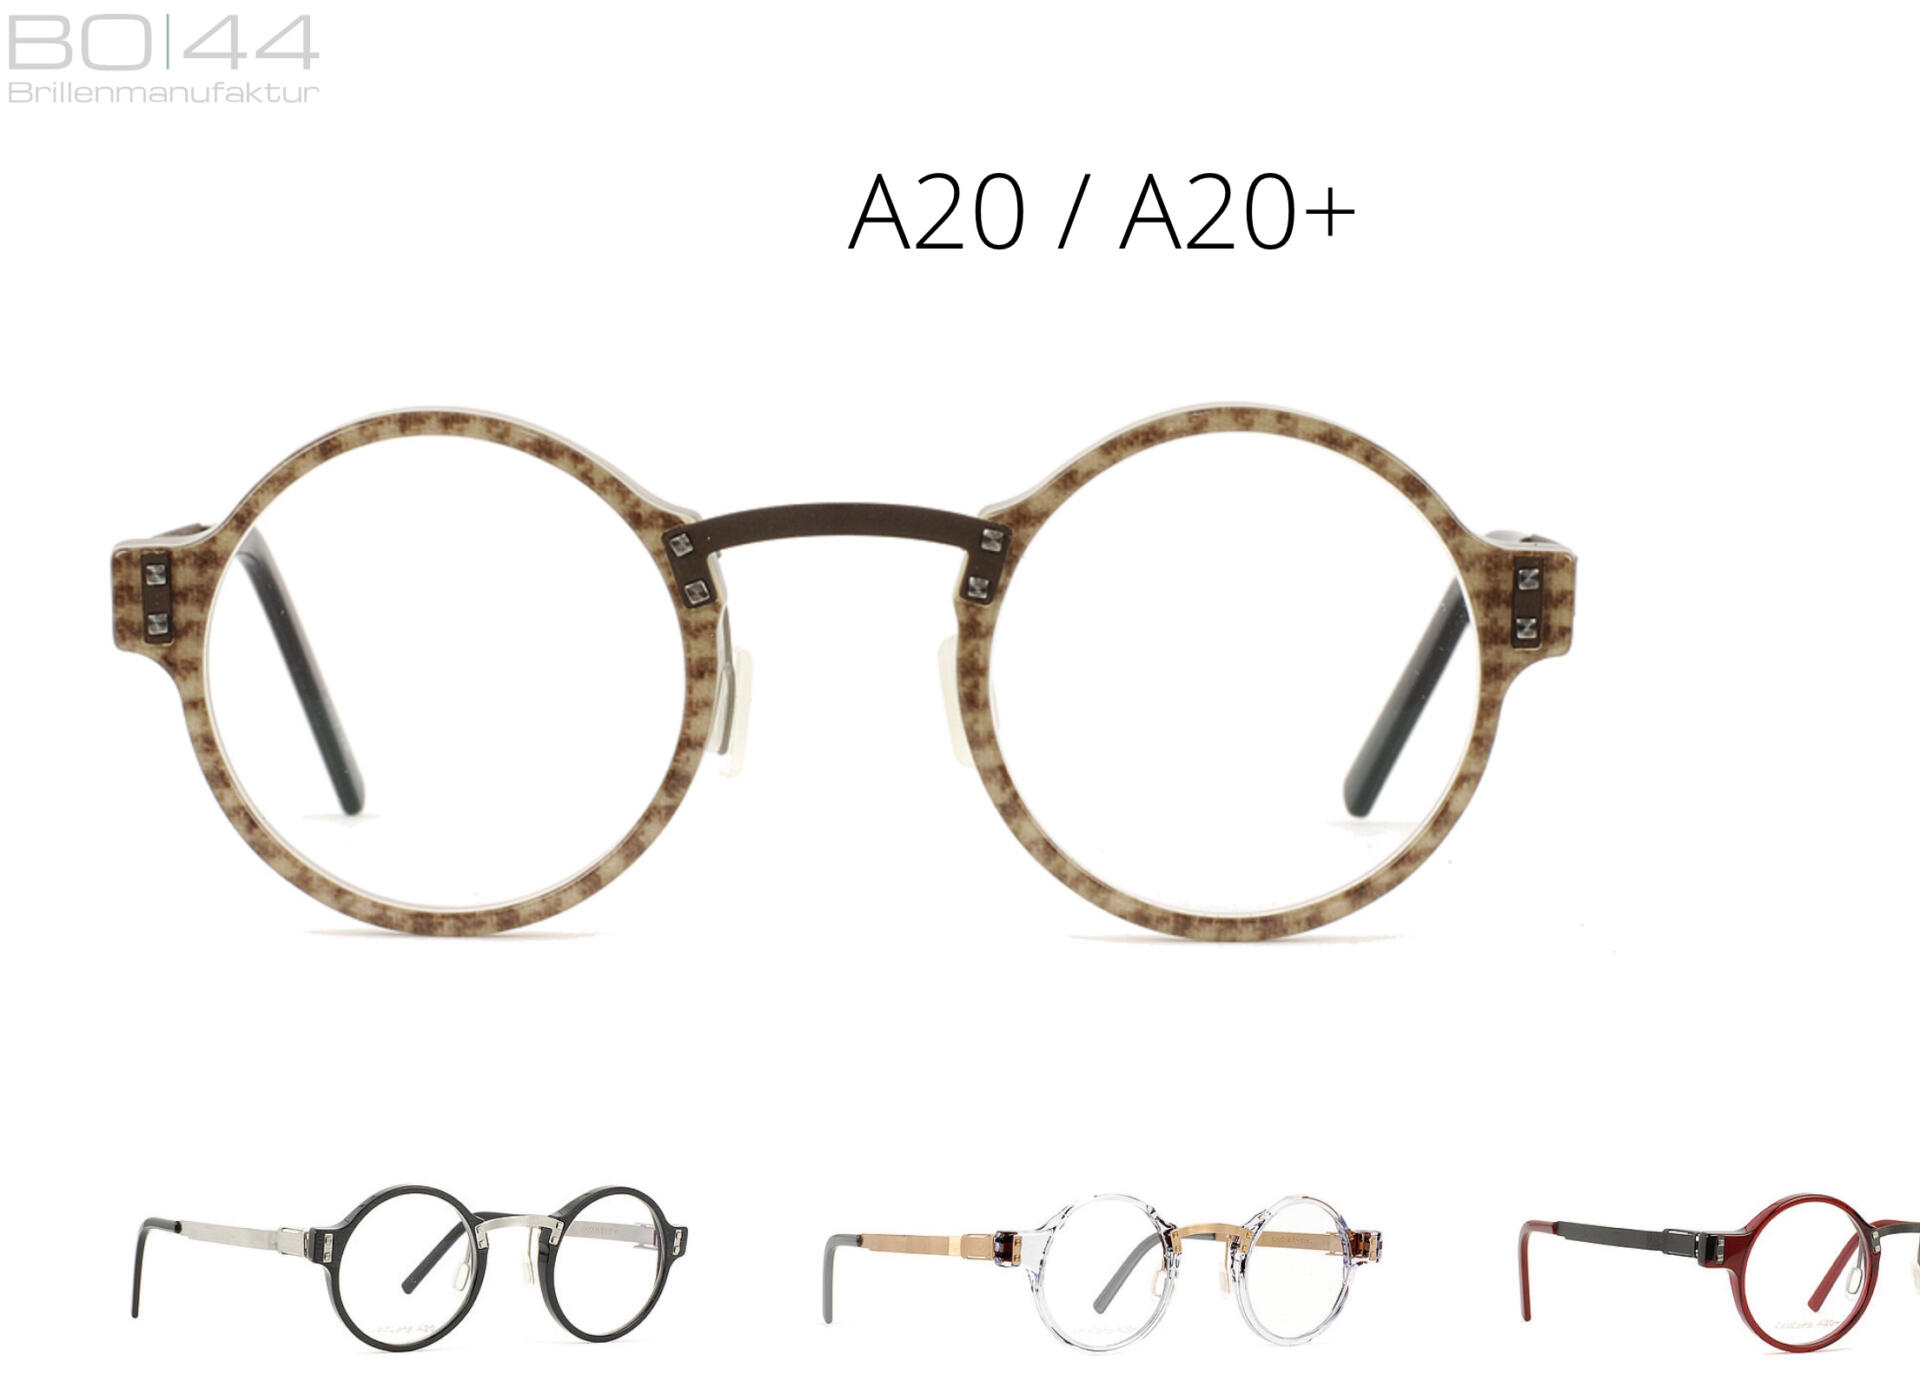 Beitragsbild zu “BO 44:  Designerbrillen mitten aus dem Ruhrgebiet”